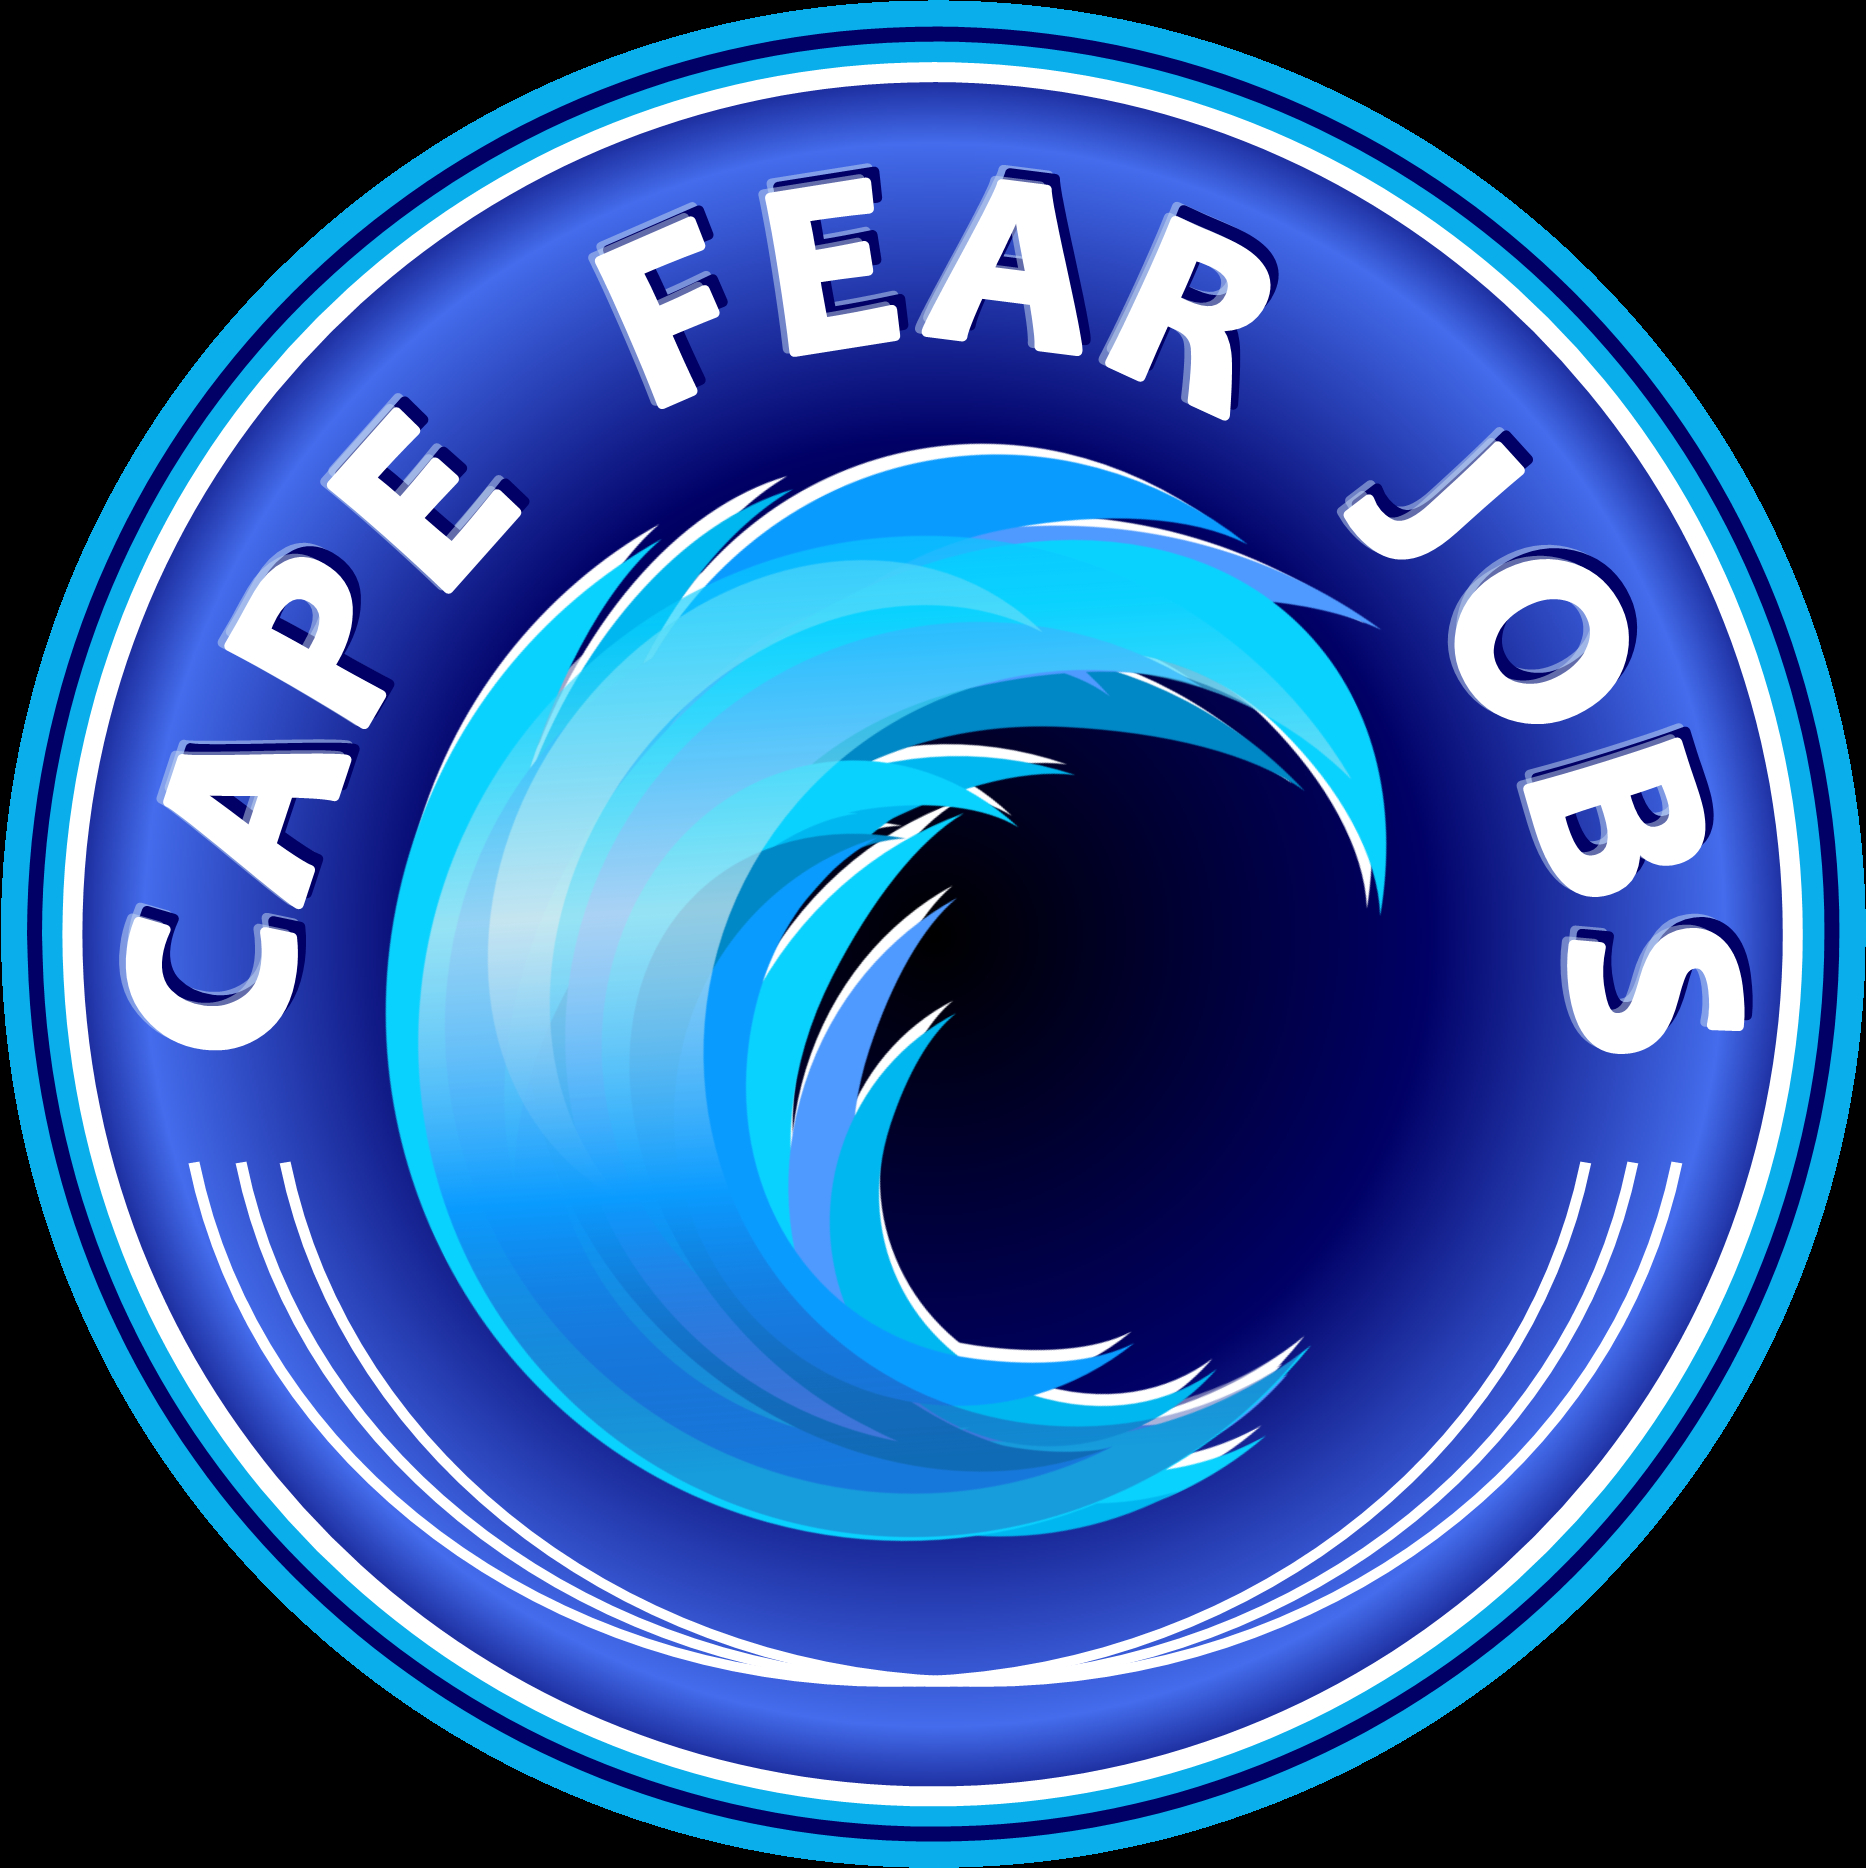 Job Seekers Agreement Job Seekers Agreement Cape Fear Jobs